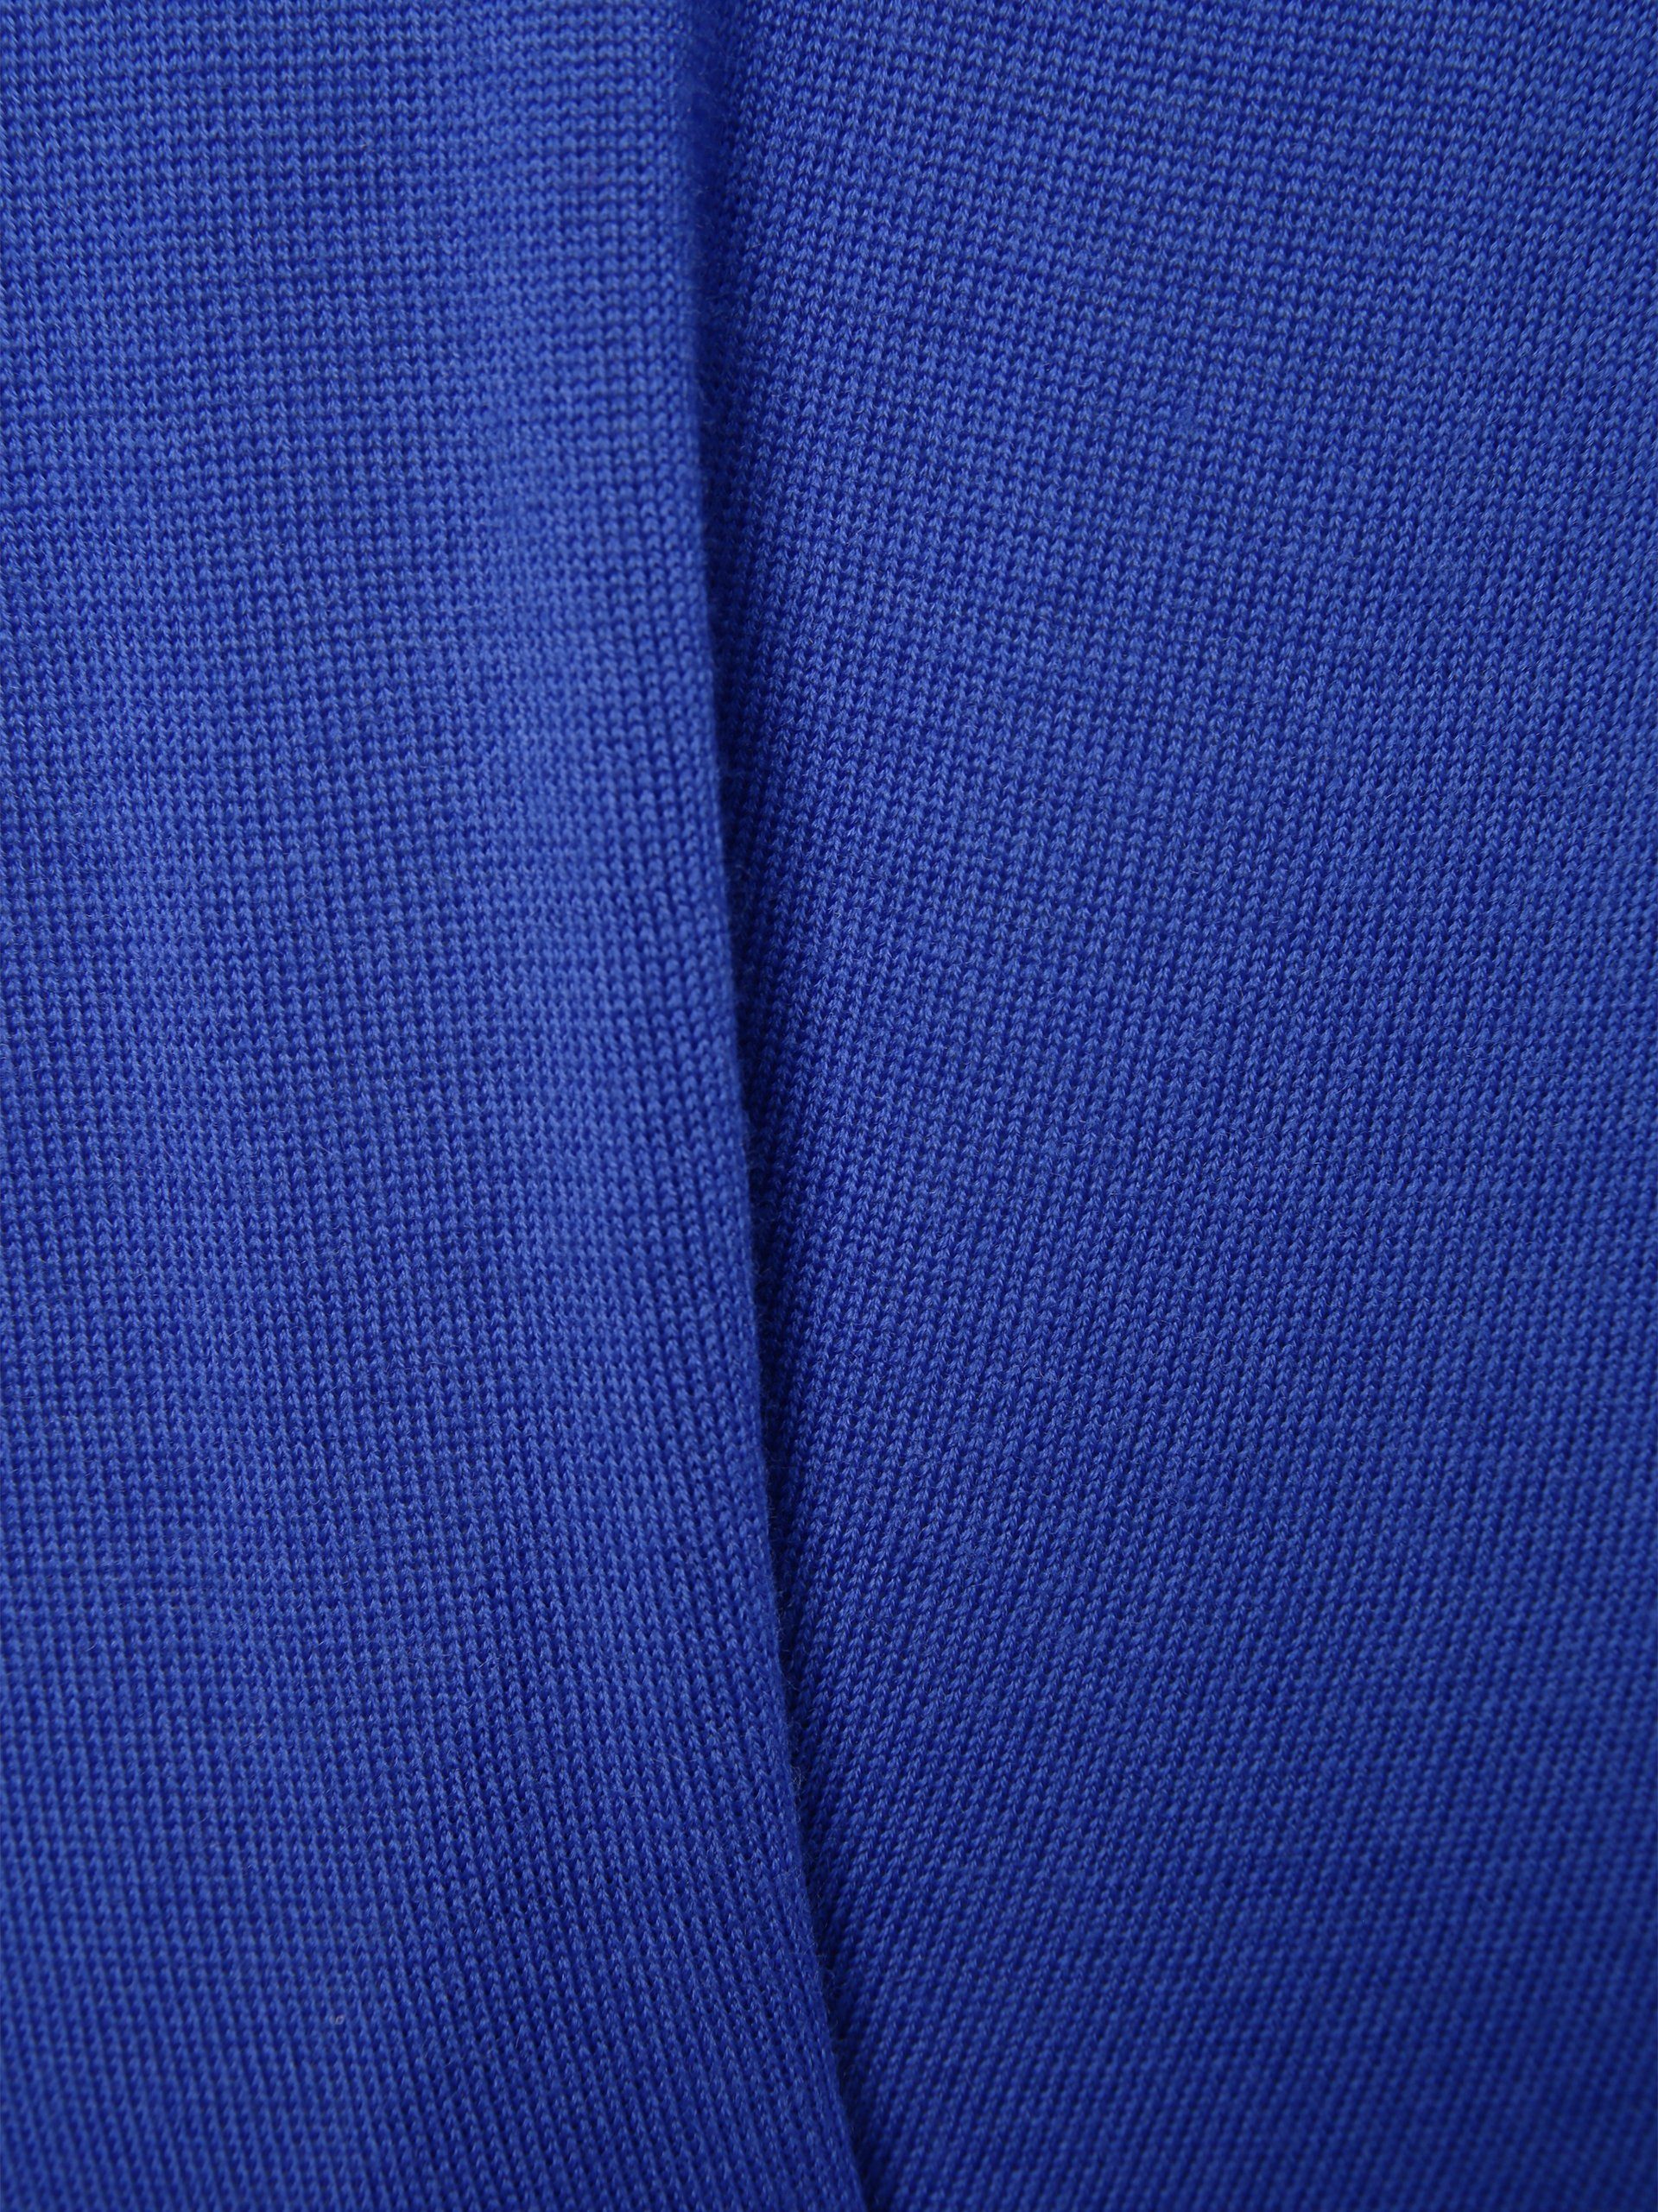 Strickpullover blau brookshire